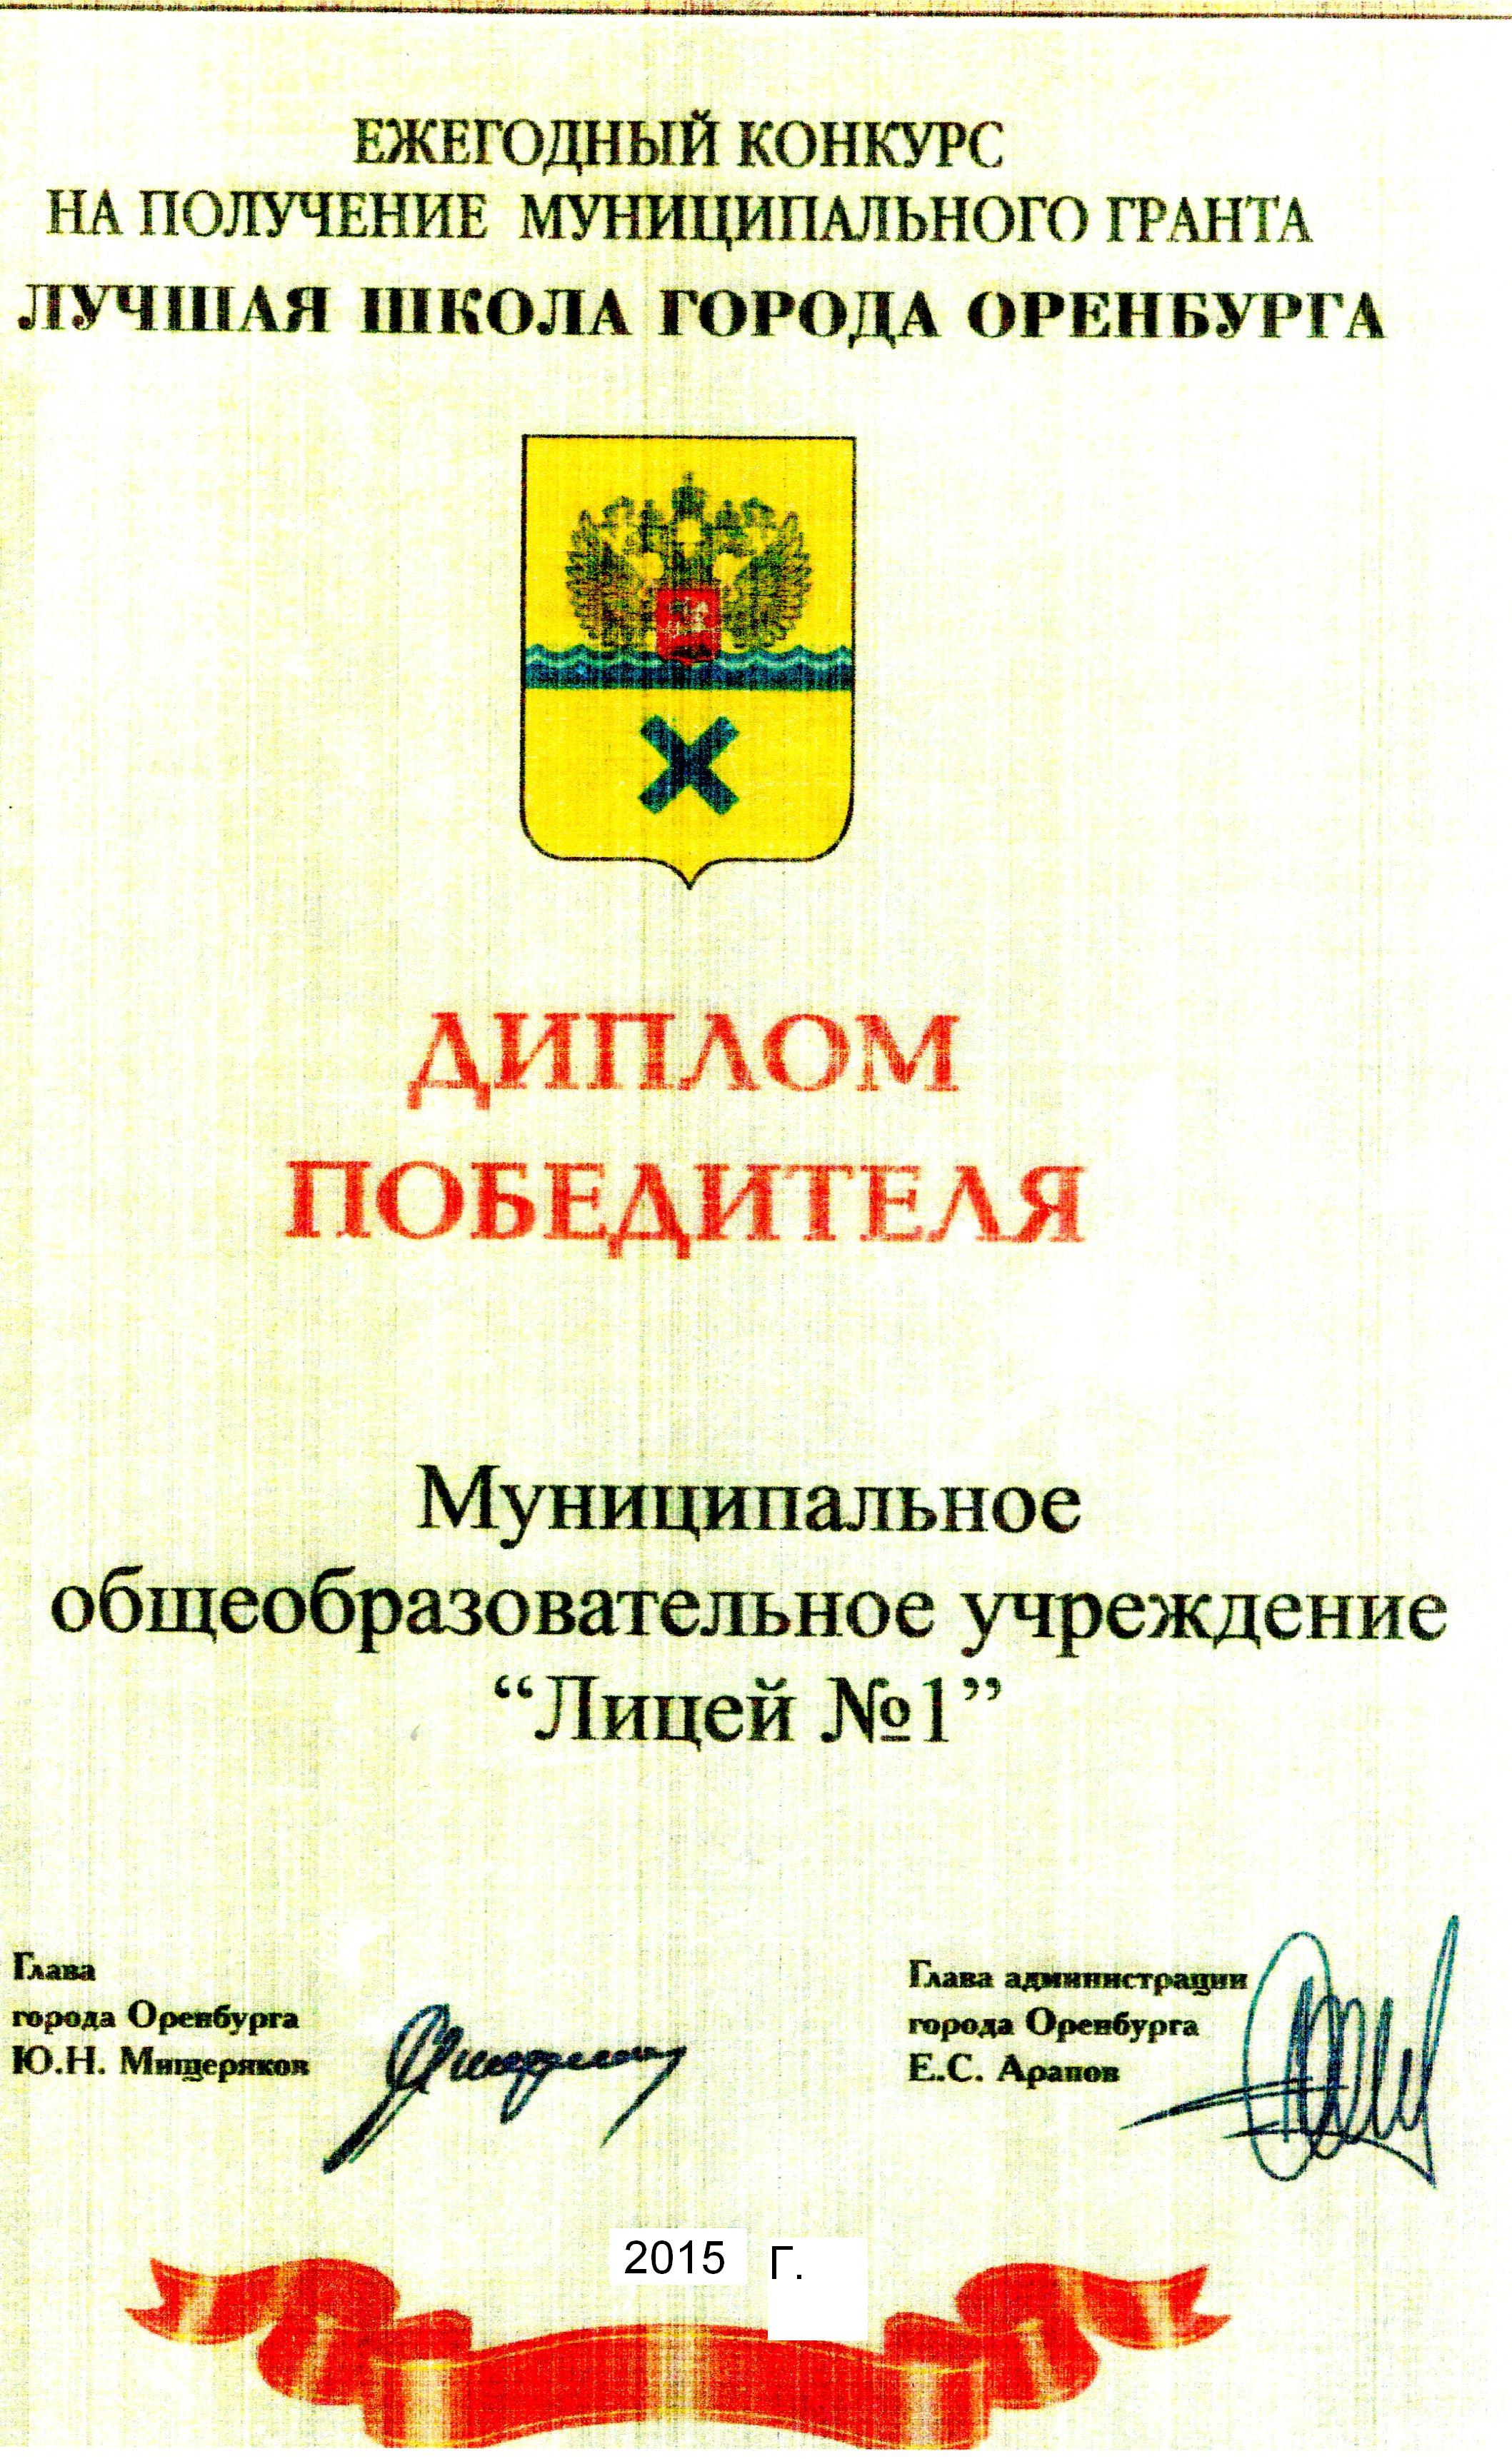 Диплом победителя ежегодного конкурса на право получение Гранта "Лучшая школа города Оренбурга", 2015г.